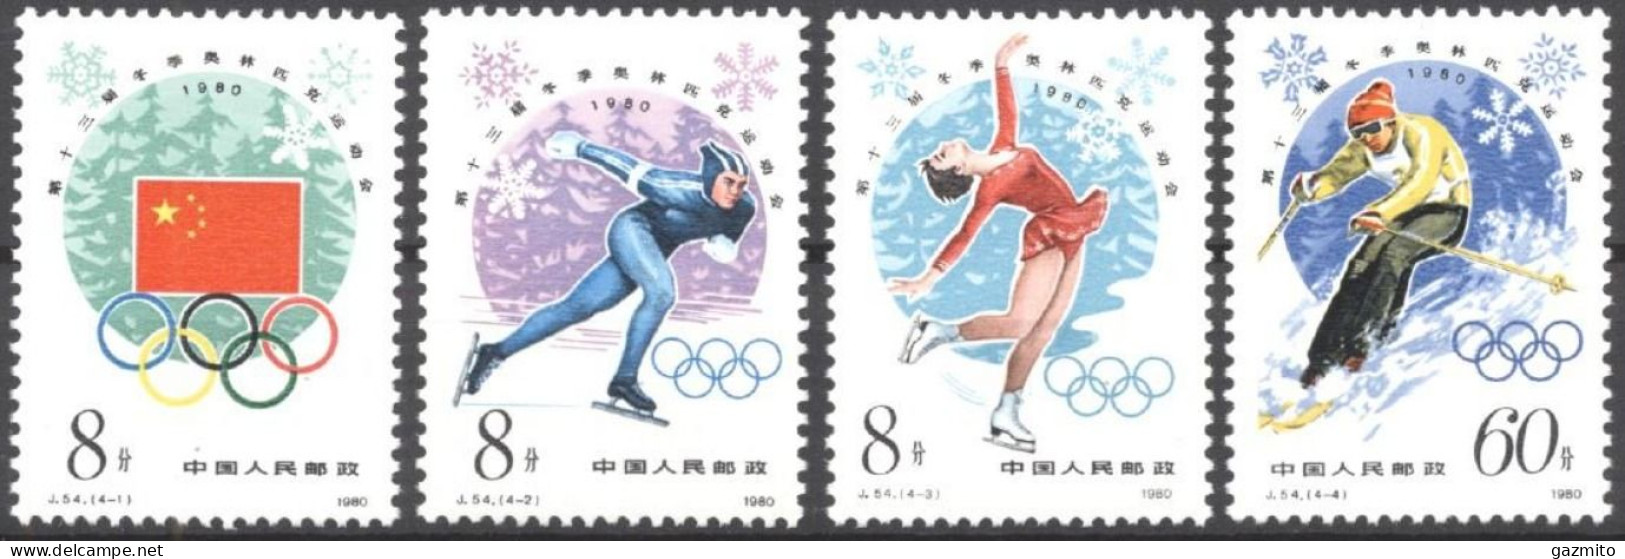 China 1980, Winter Olympic Games, Lake Placid, Skating, Skiing, 4val - Kunstschaatsen